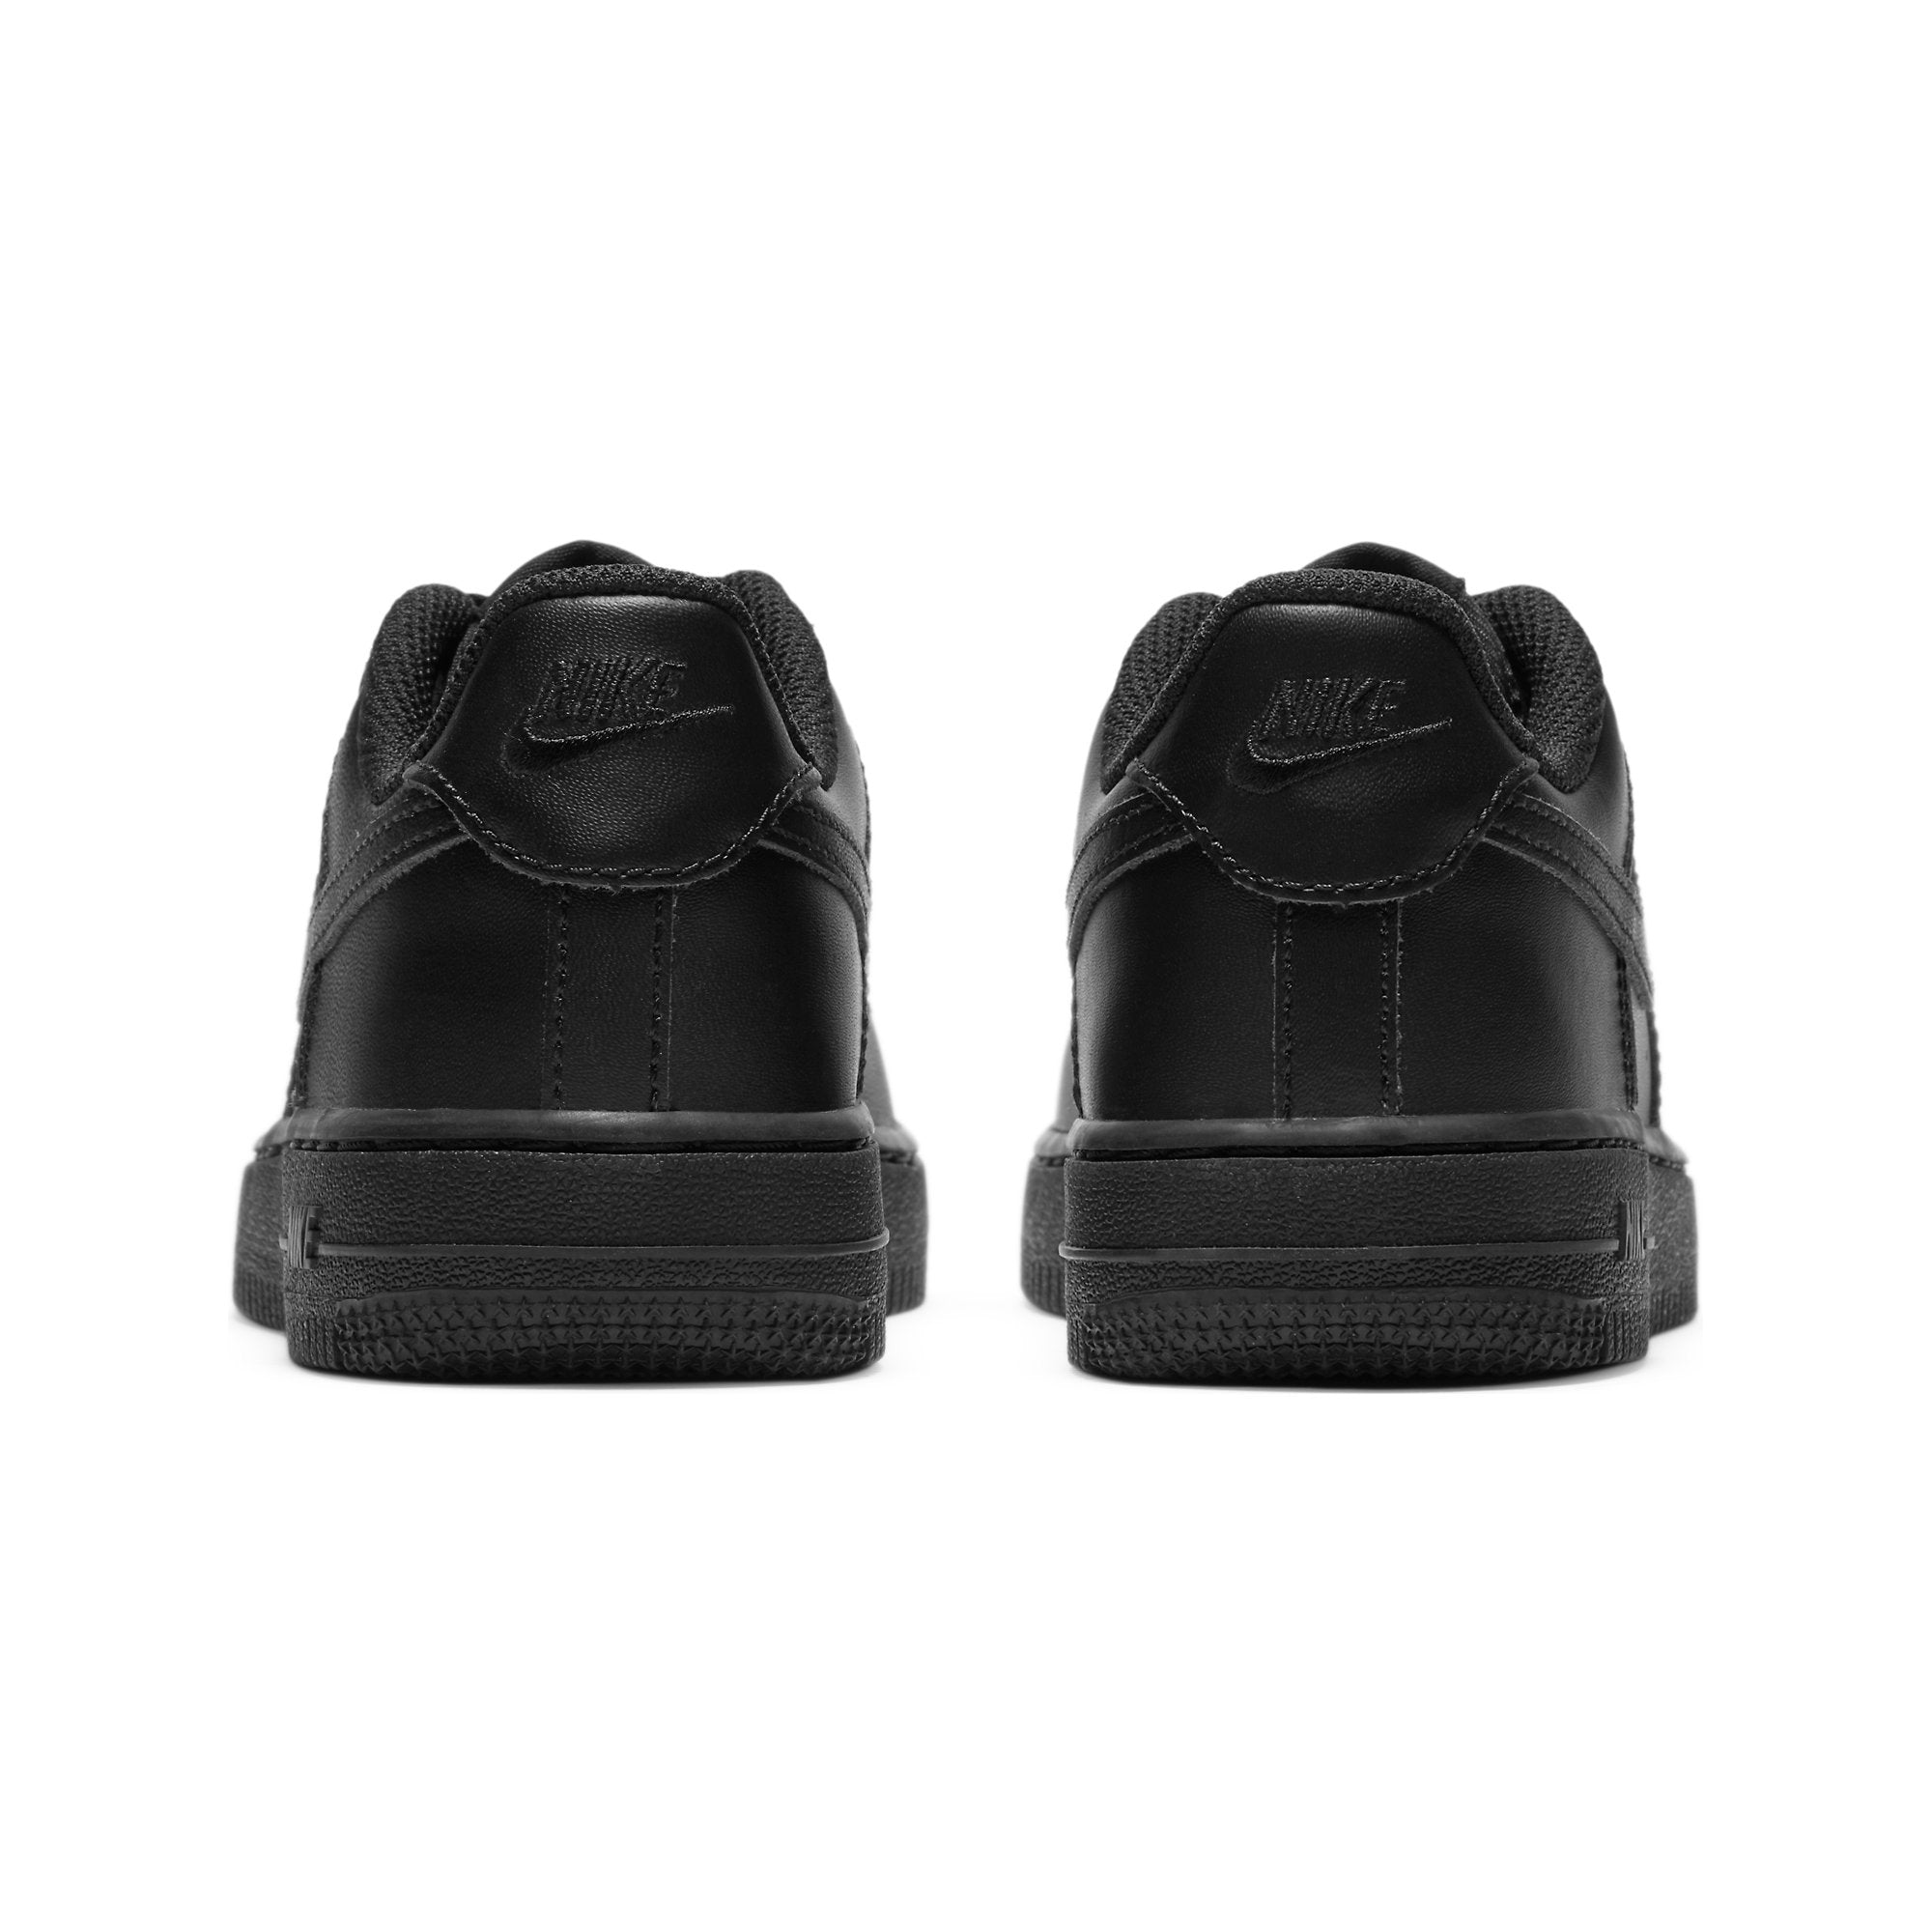 Zapatilla Nike Air Force 1 de Niños color Negro - Credichips